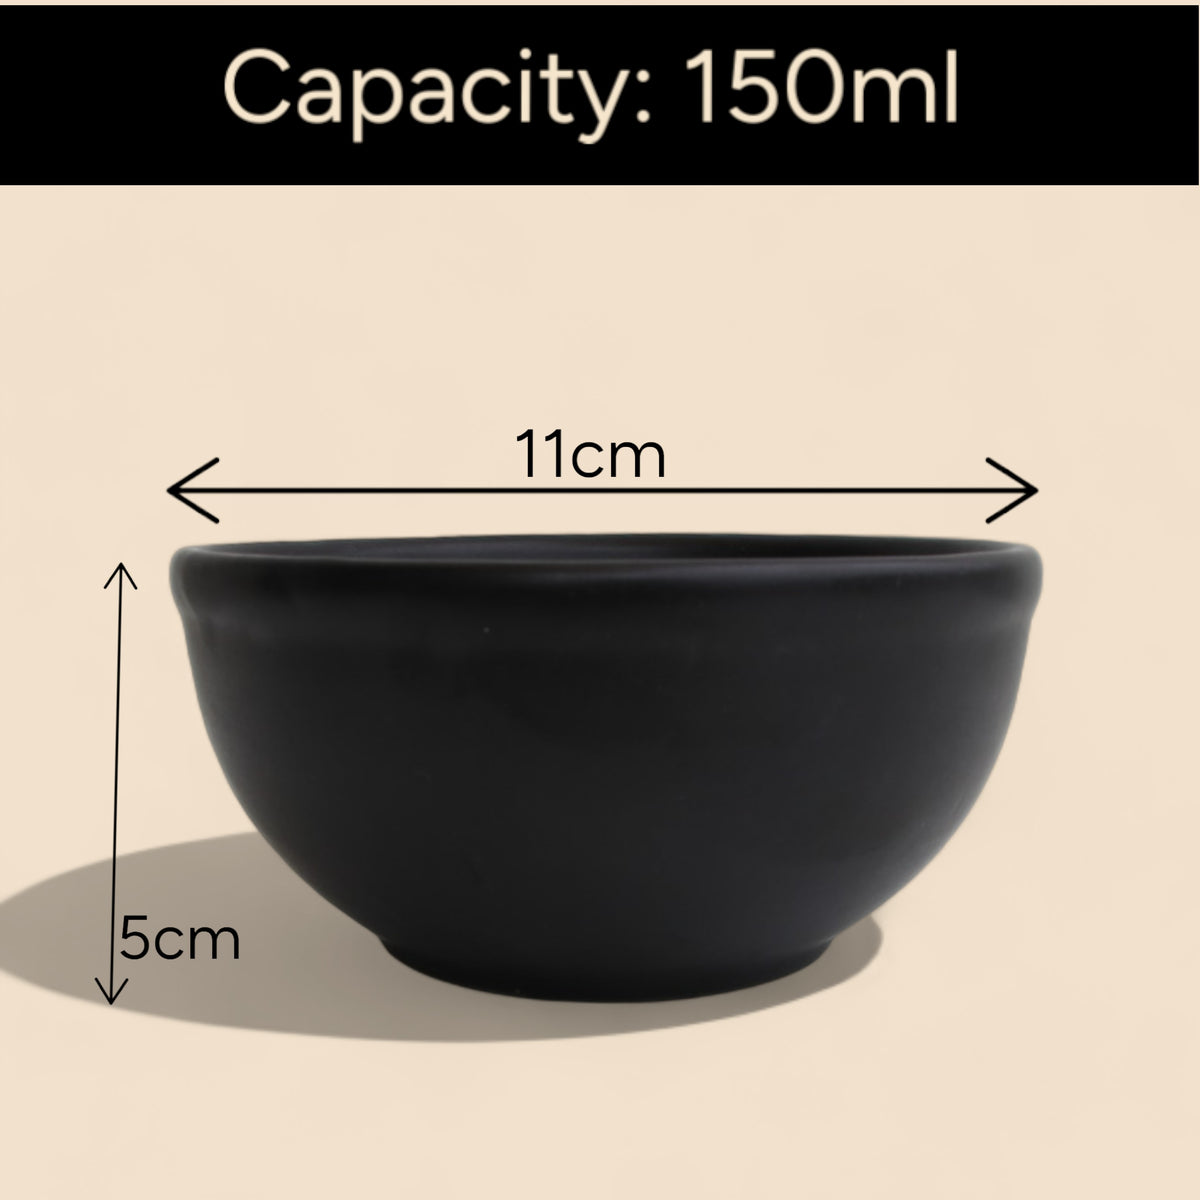 Claymistry Ceramic Black Serving Bowl | Set of 2 | 11cm * 11cm * 5cm | Matte Finish | Dishwasher & Microwave Safe | Salad, Cereal, Maggie, Fruit, Soup, Dessert, Mixing Bowl | Premium Kitchen Crockery